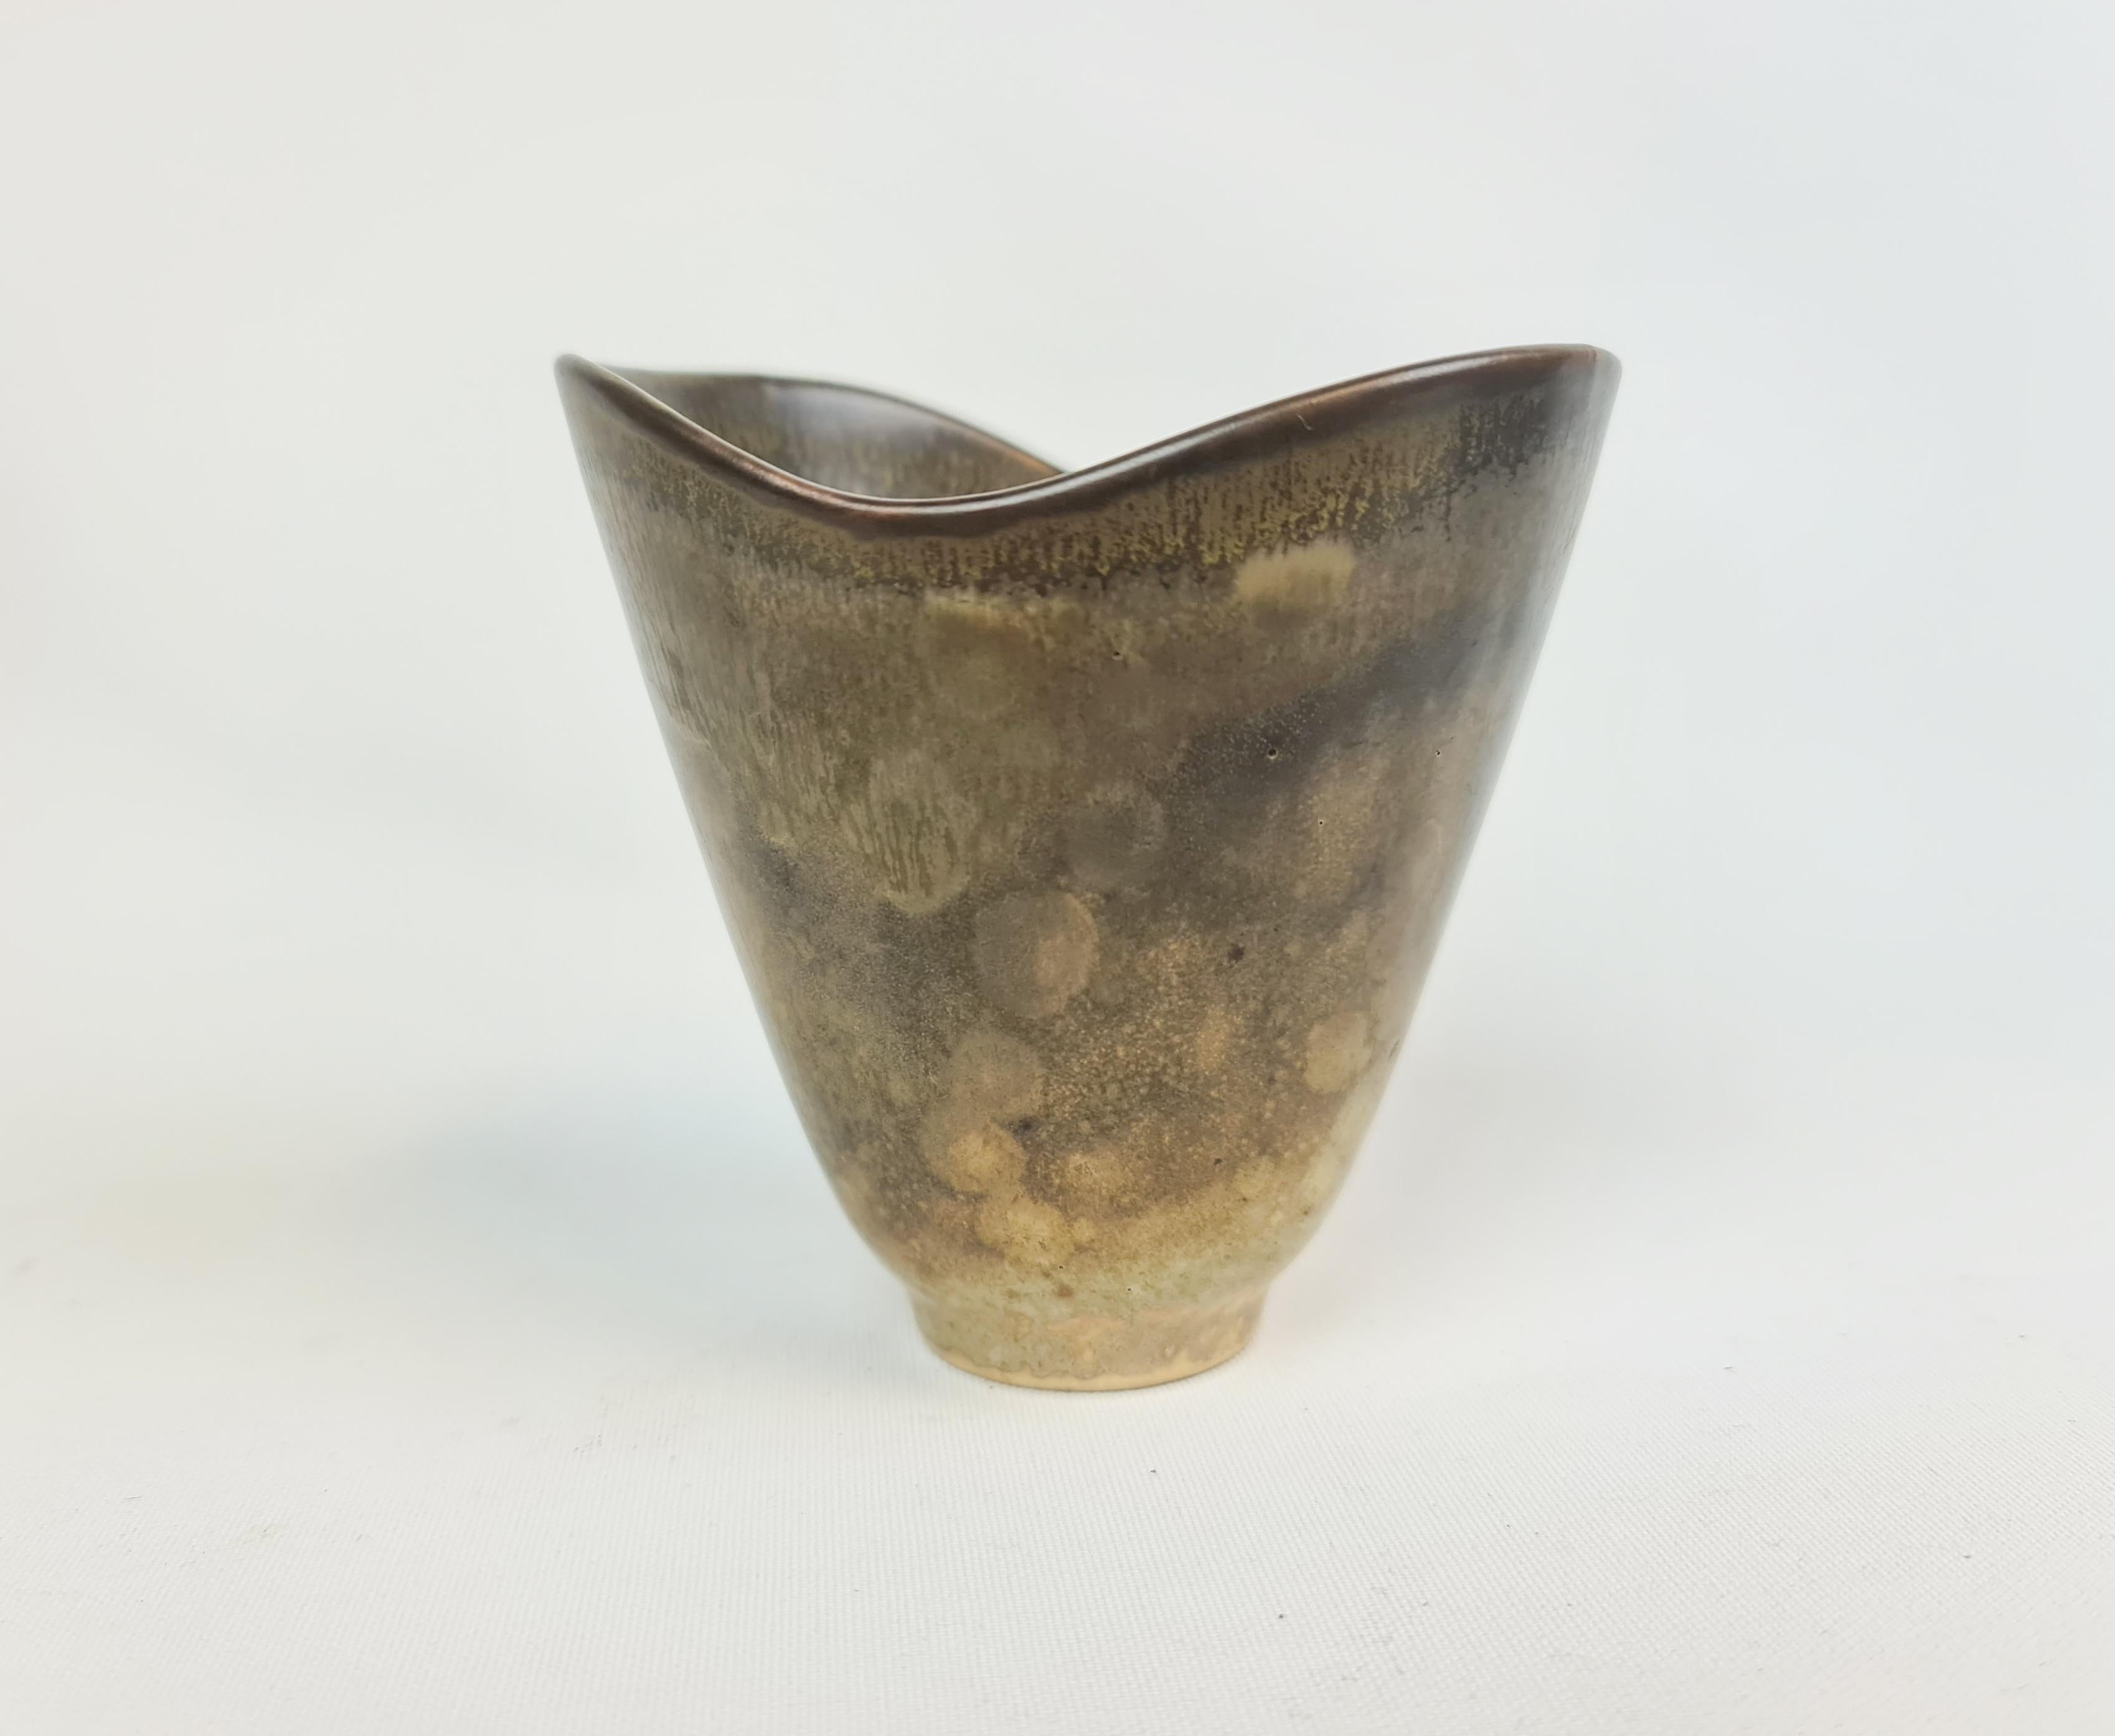 Merveilleux vase fabriqué en Suède dans les années 1950 à Rörstrand et conçu par Carl-Harry Stålhane.
Le vase a de belles lignes et une belle glaçure.

Très bon état. 

Mesures : H 1 cm, L 10 cm, P 9 cm.